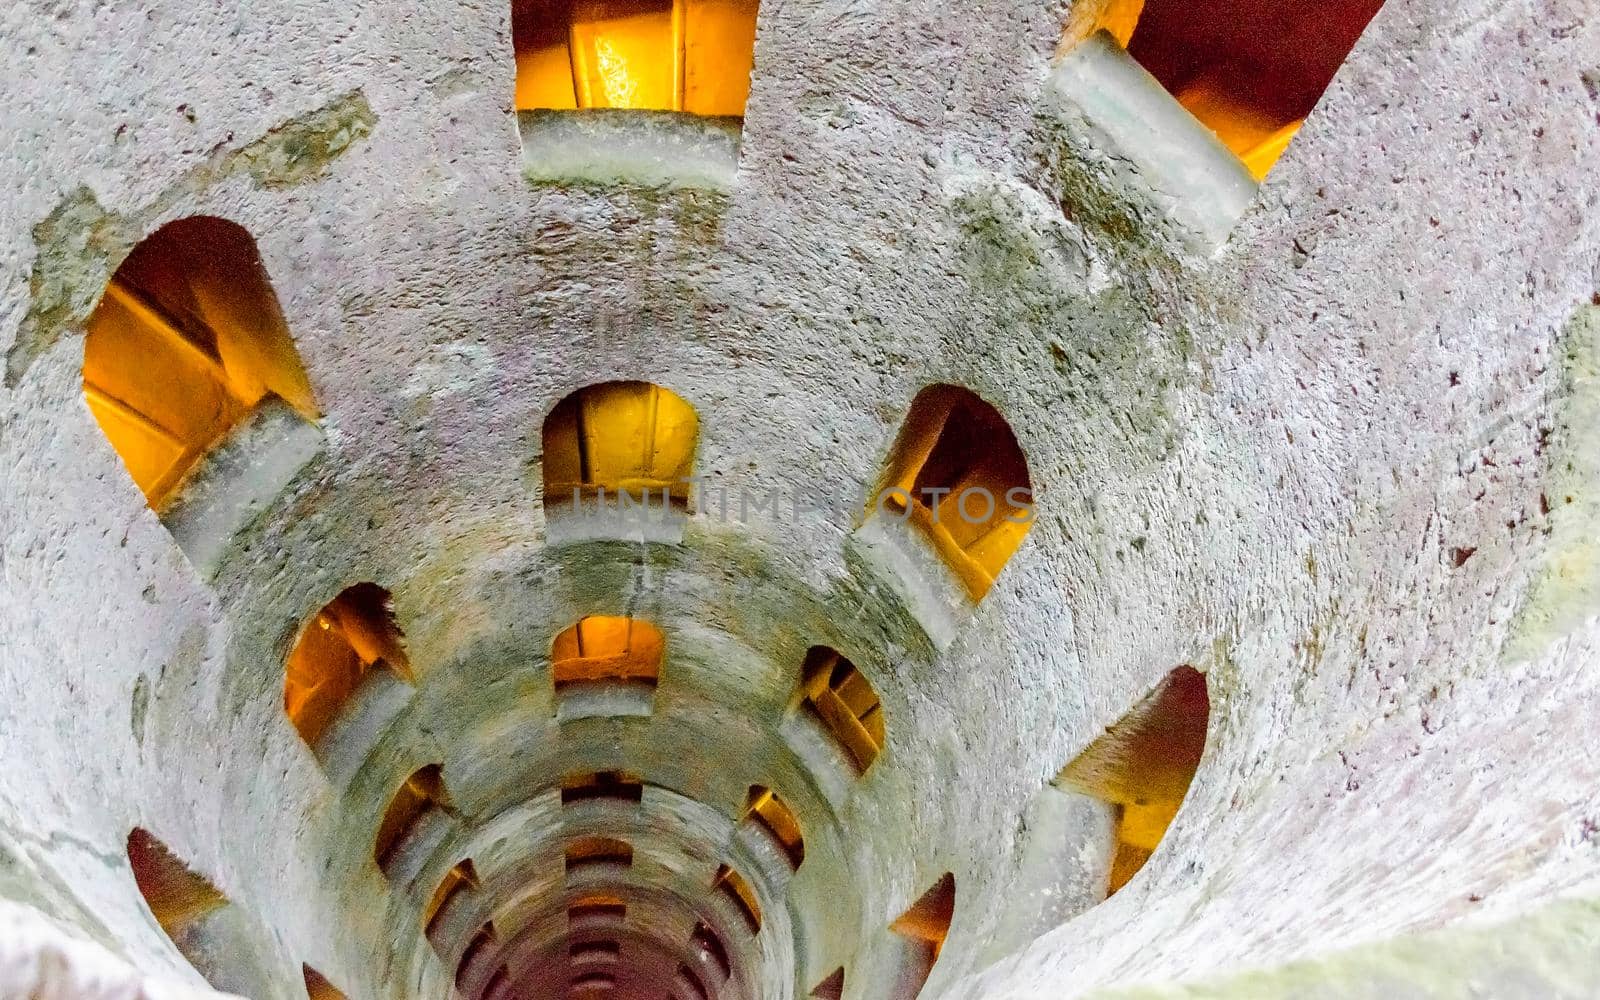 St. Patrick's Well, Orvieto, Italy by marcorubino